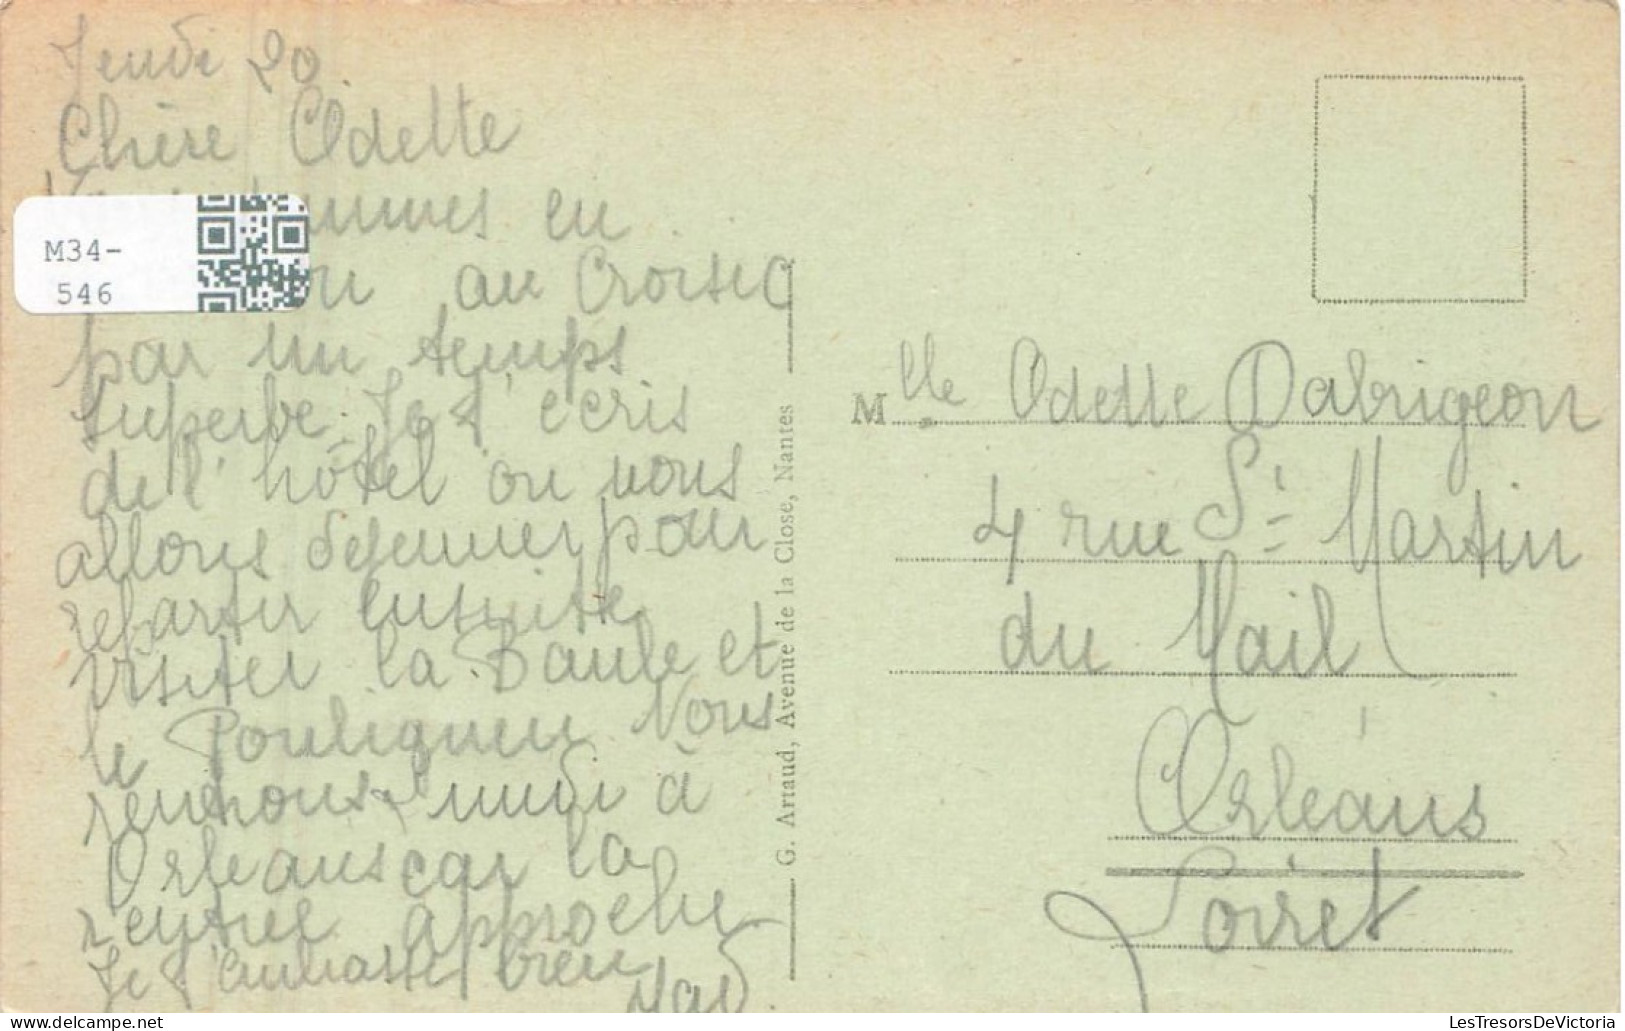 FRANCE - Le Croisic - Quai De La Grande Chambre - Animé - Oblitération Ambulmante - Carte Postale Ancienne - Le Croisic